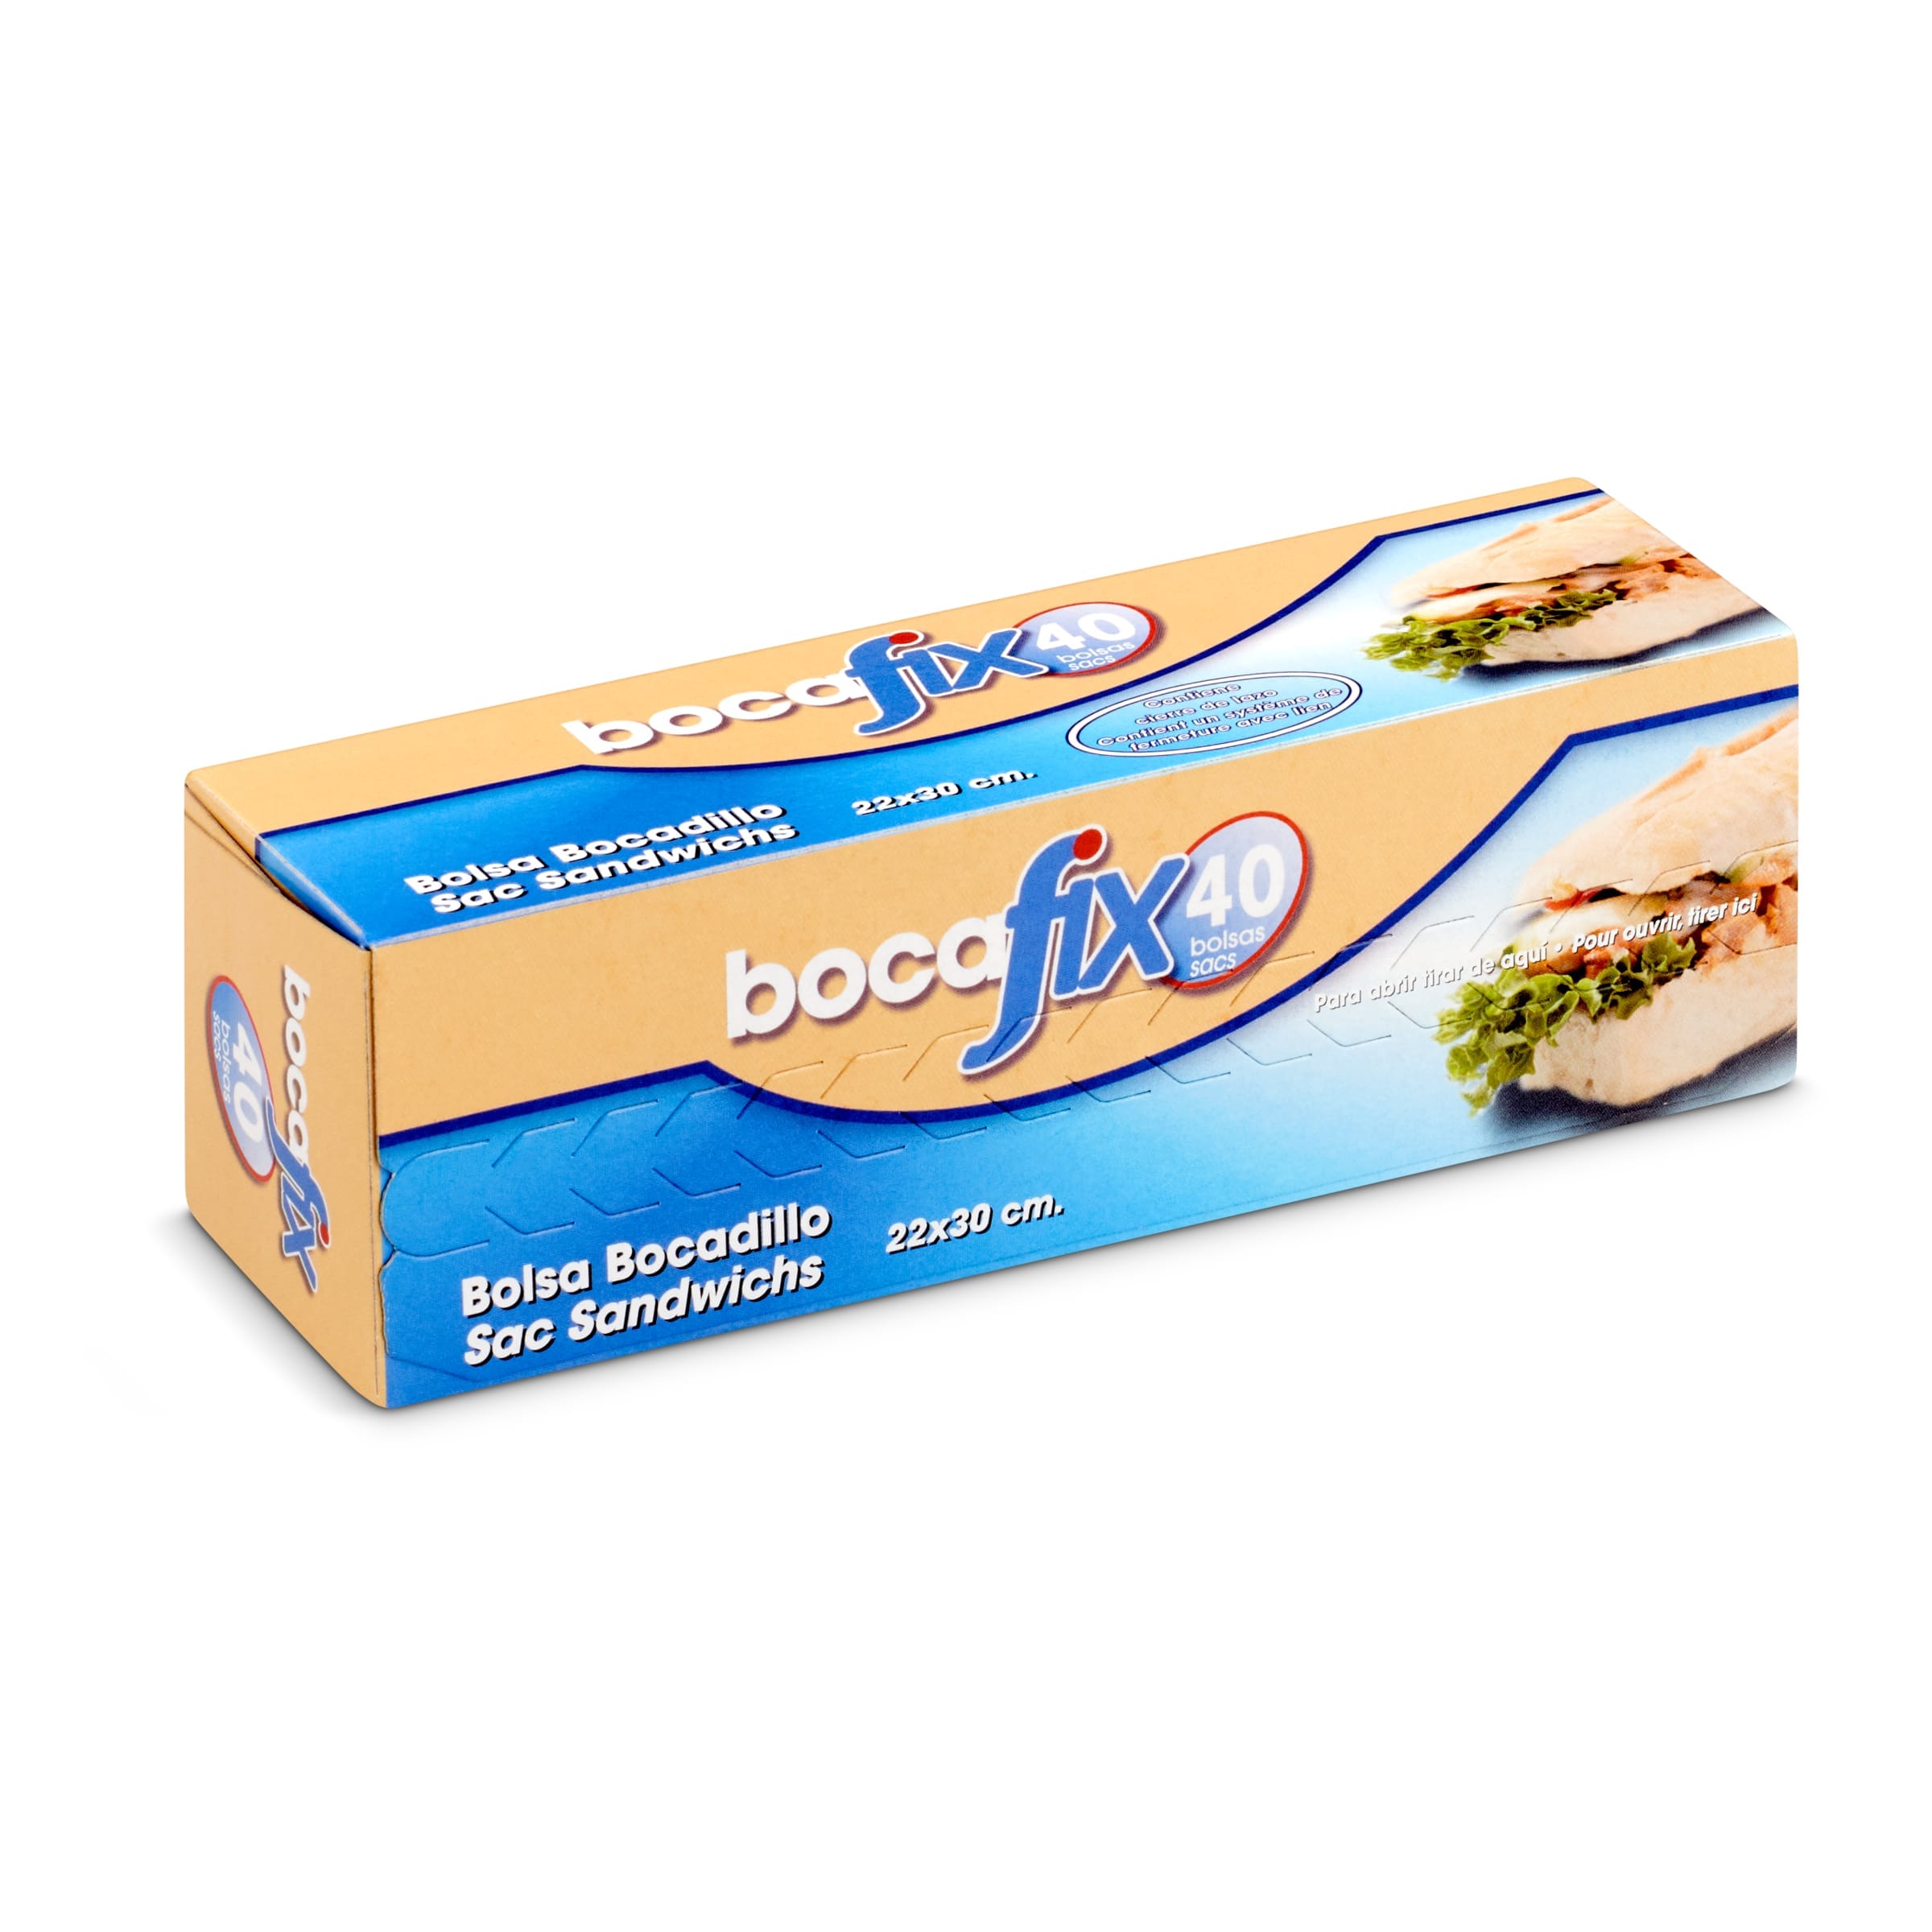 Bolsa de bocadillo Bocafix caja 40 unidades - Supermercados DIA